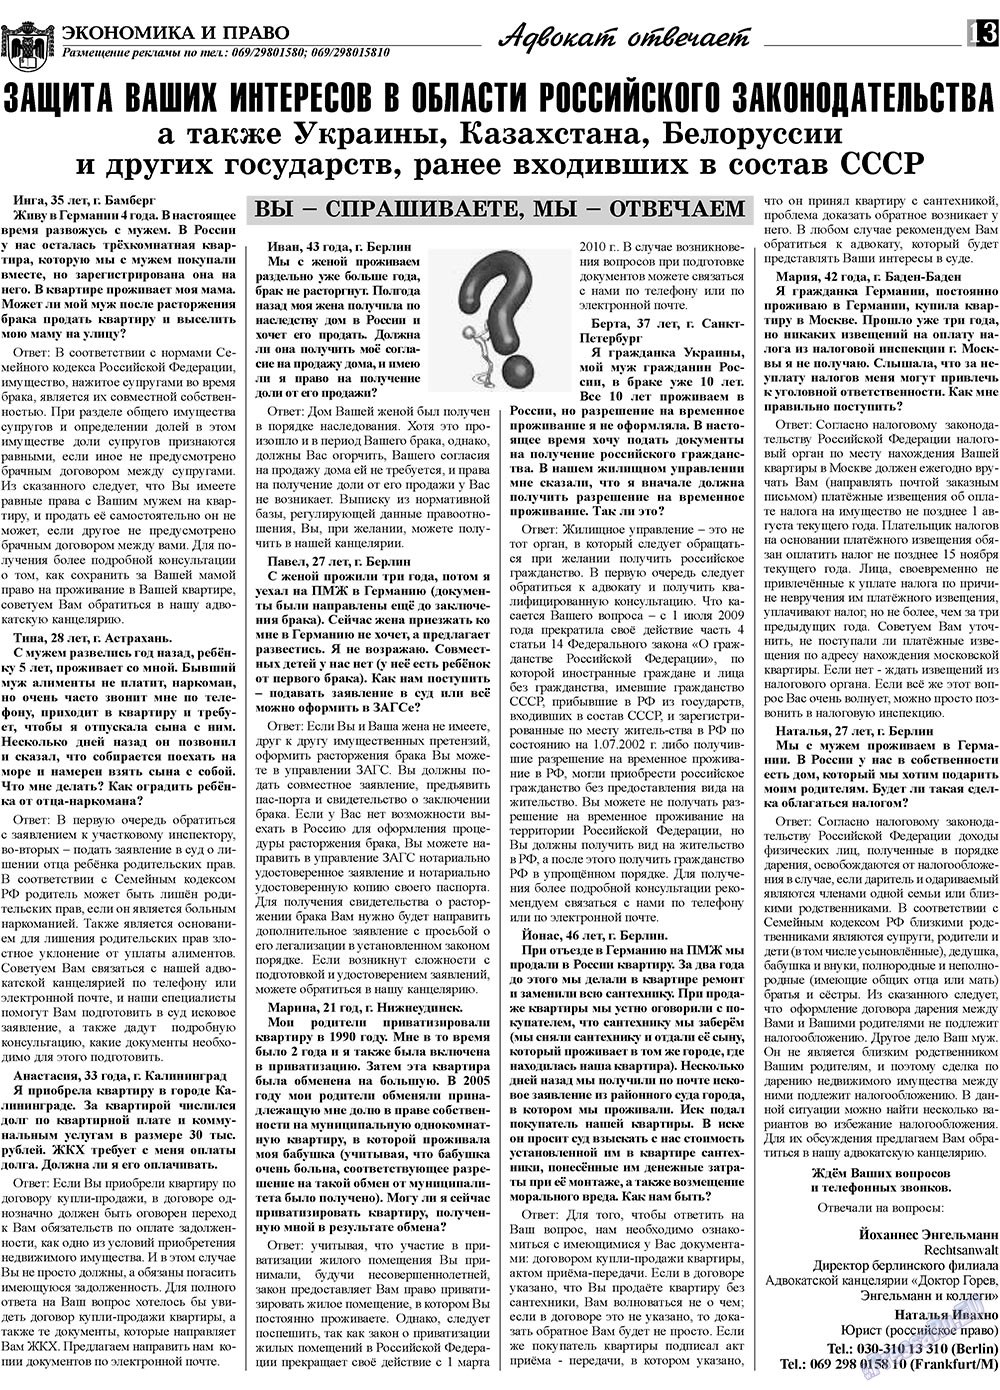 Экономика и право, газета. 2009 №12 стр.13